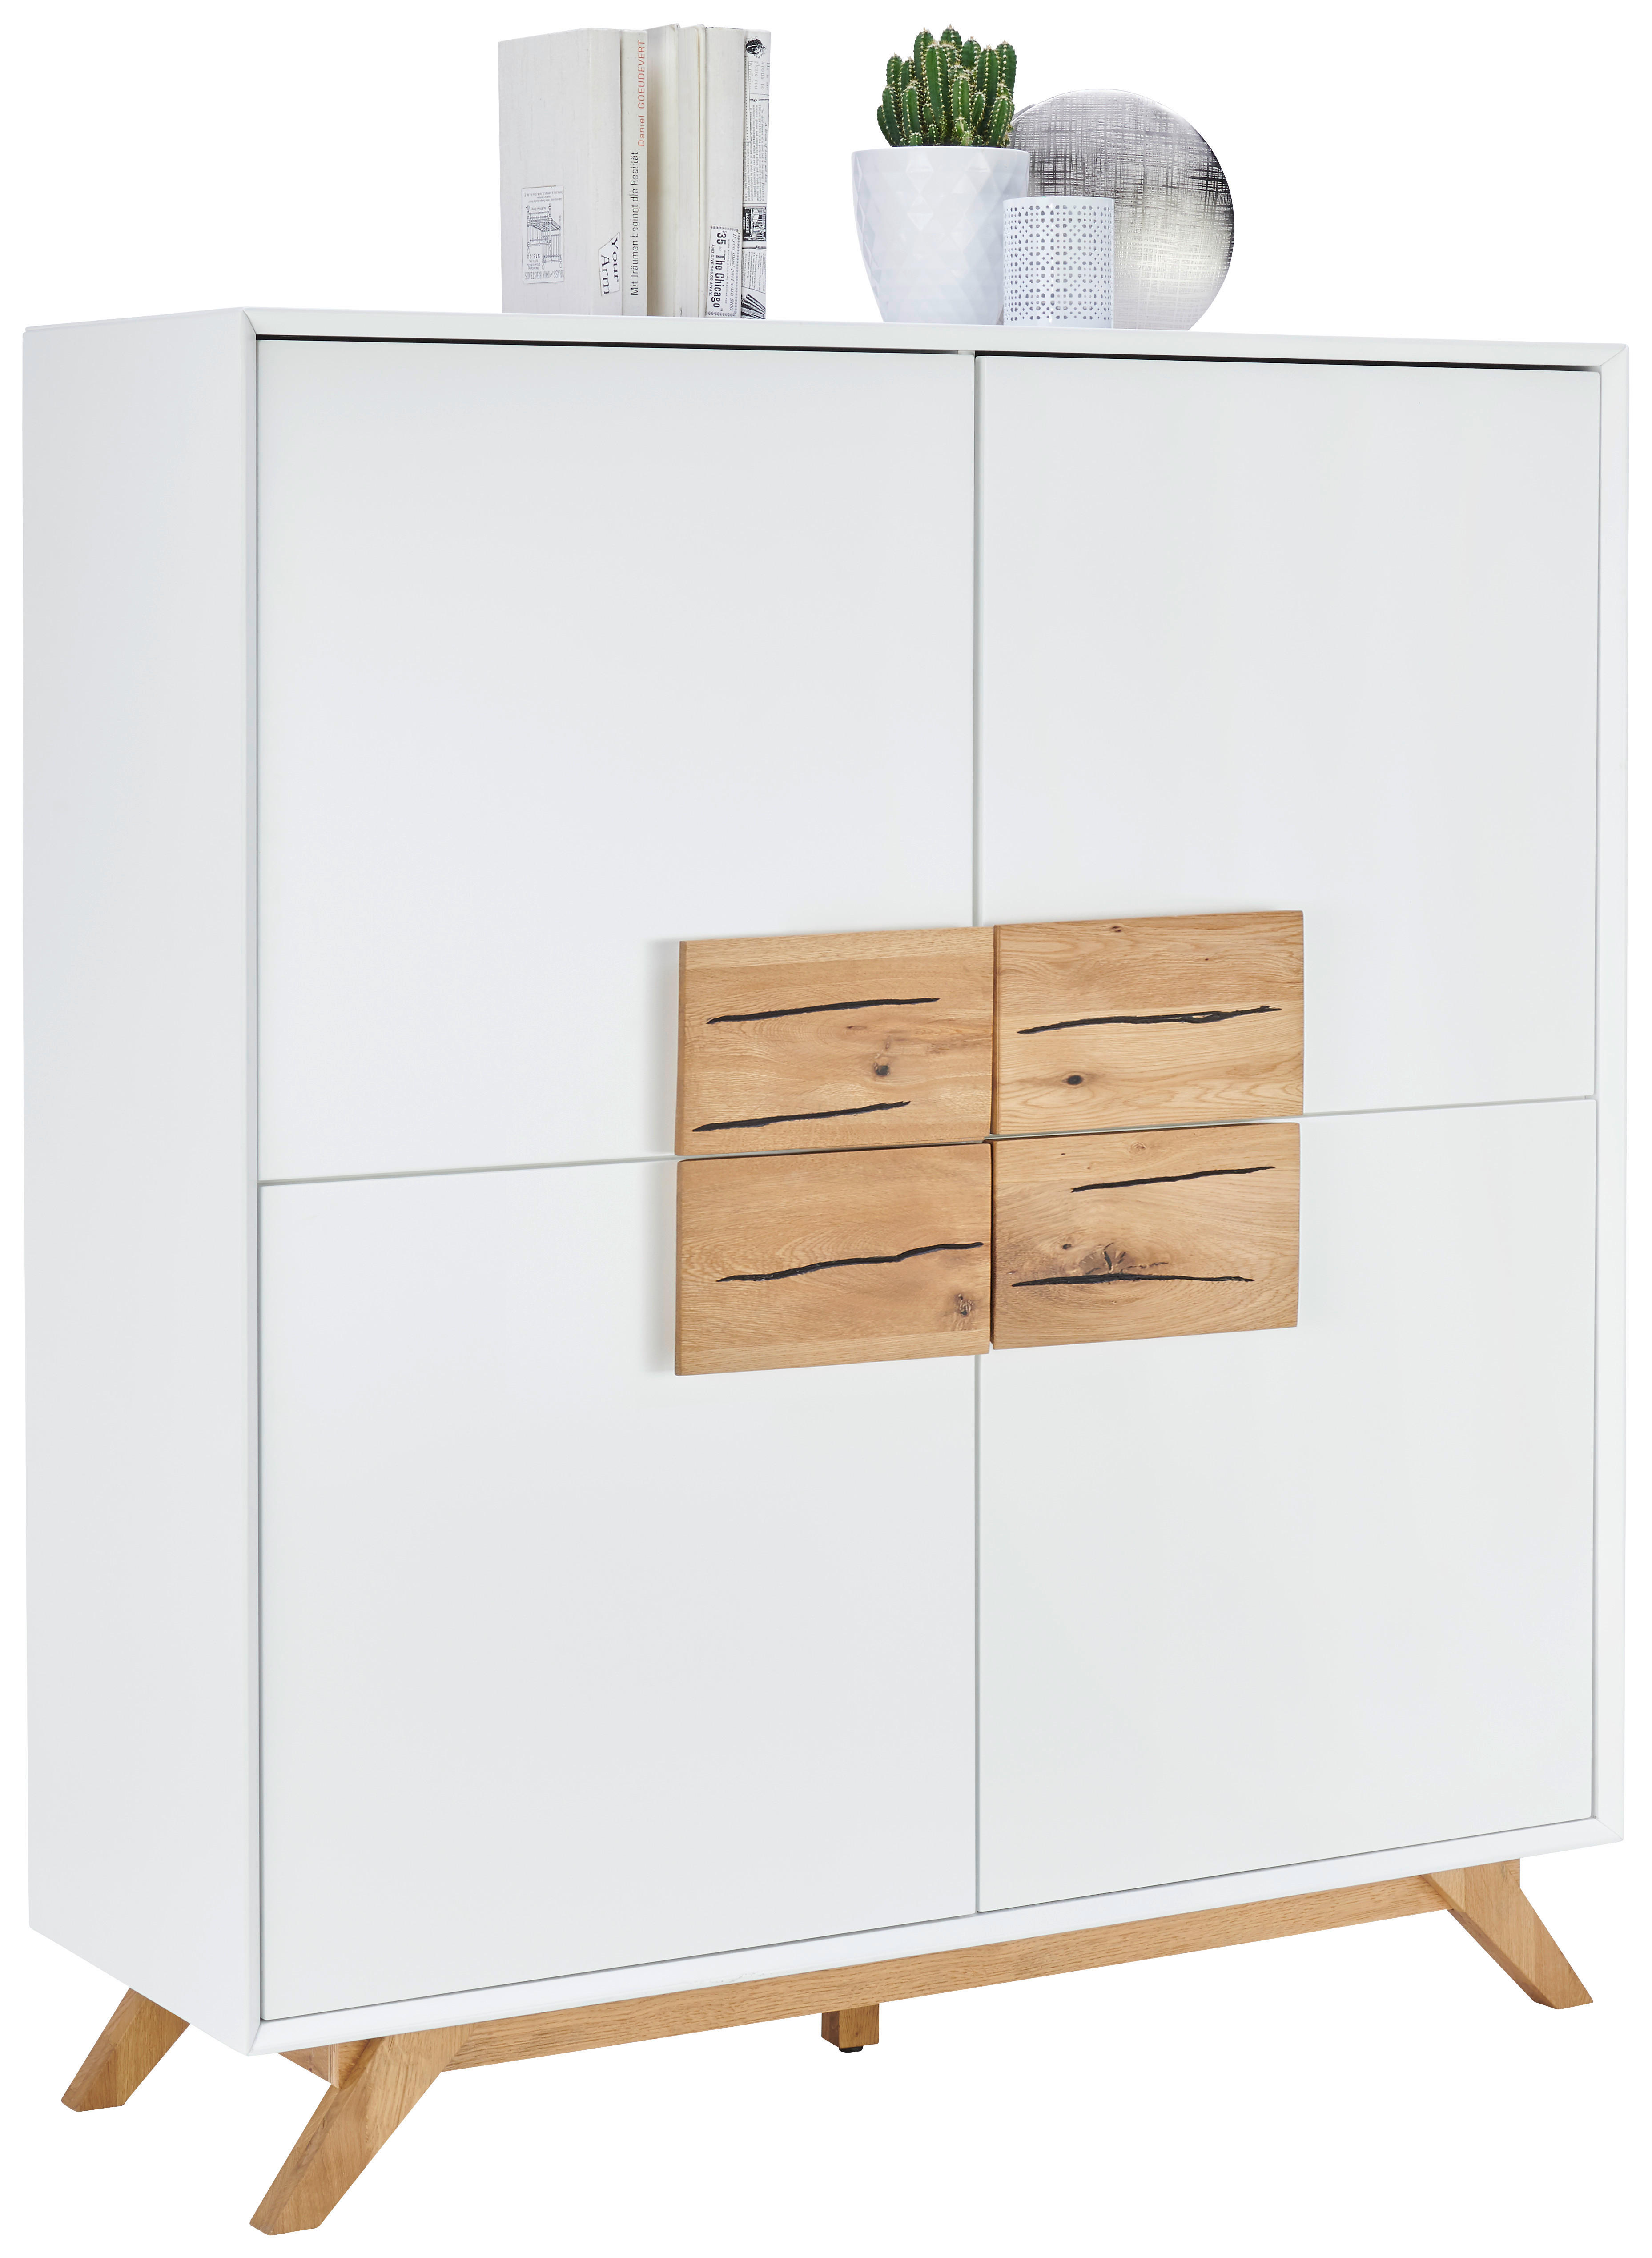 HIGHBOARD Eiche massiv Weiß, Eichefarben  - Eichefarben/Weiß, Design, Holz/Holzwerkstoff (120/133/40cm) - Xora